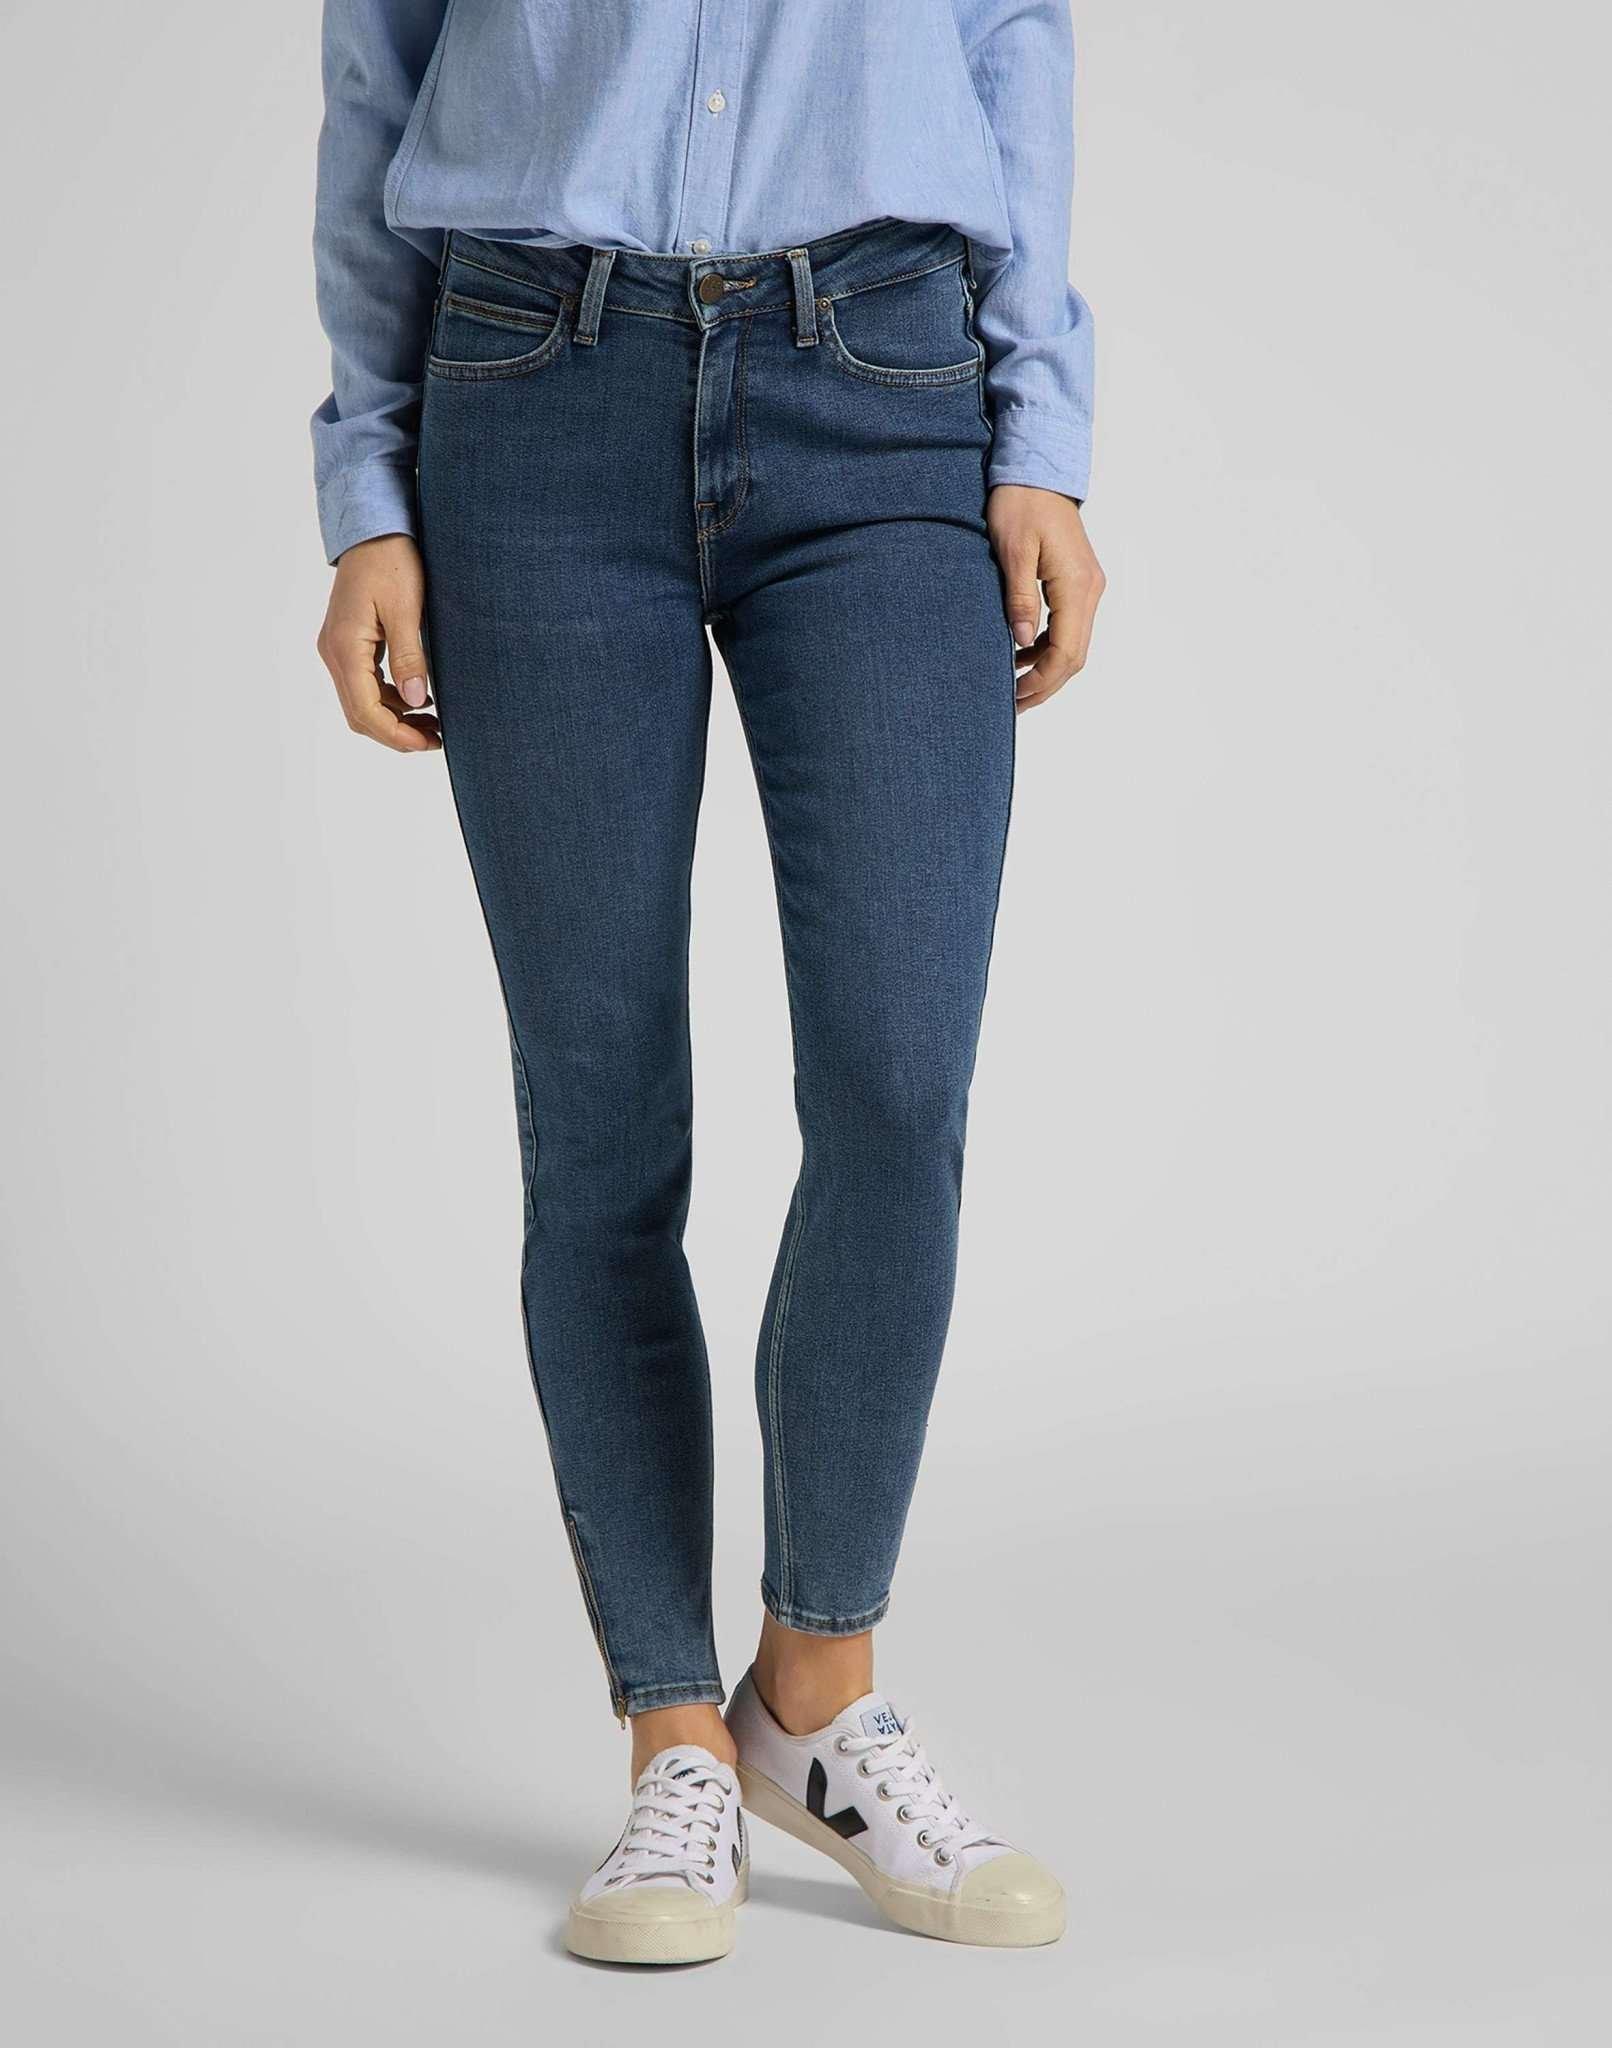 Jeans Skinny Fit Scarlett High Zip Damen Blau Denim W26 von Lee